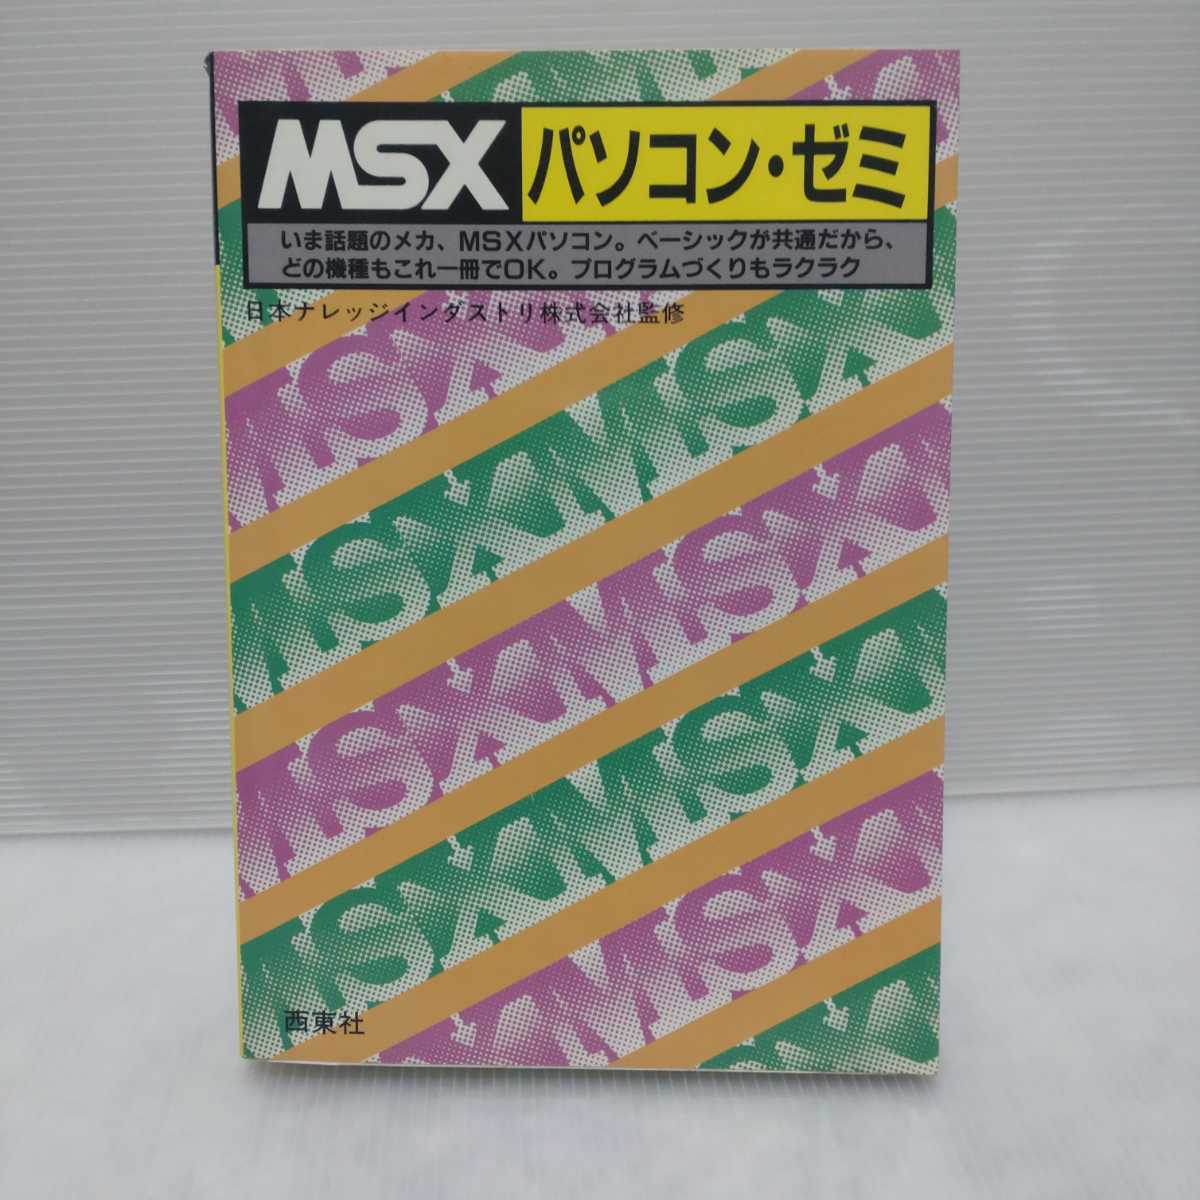 MSX персональный компьютер *zemi Япония знания in пыль li акционерное общество .. запад восток фирма 